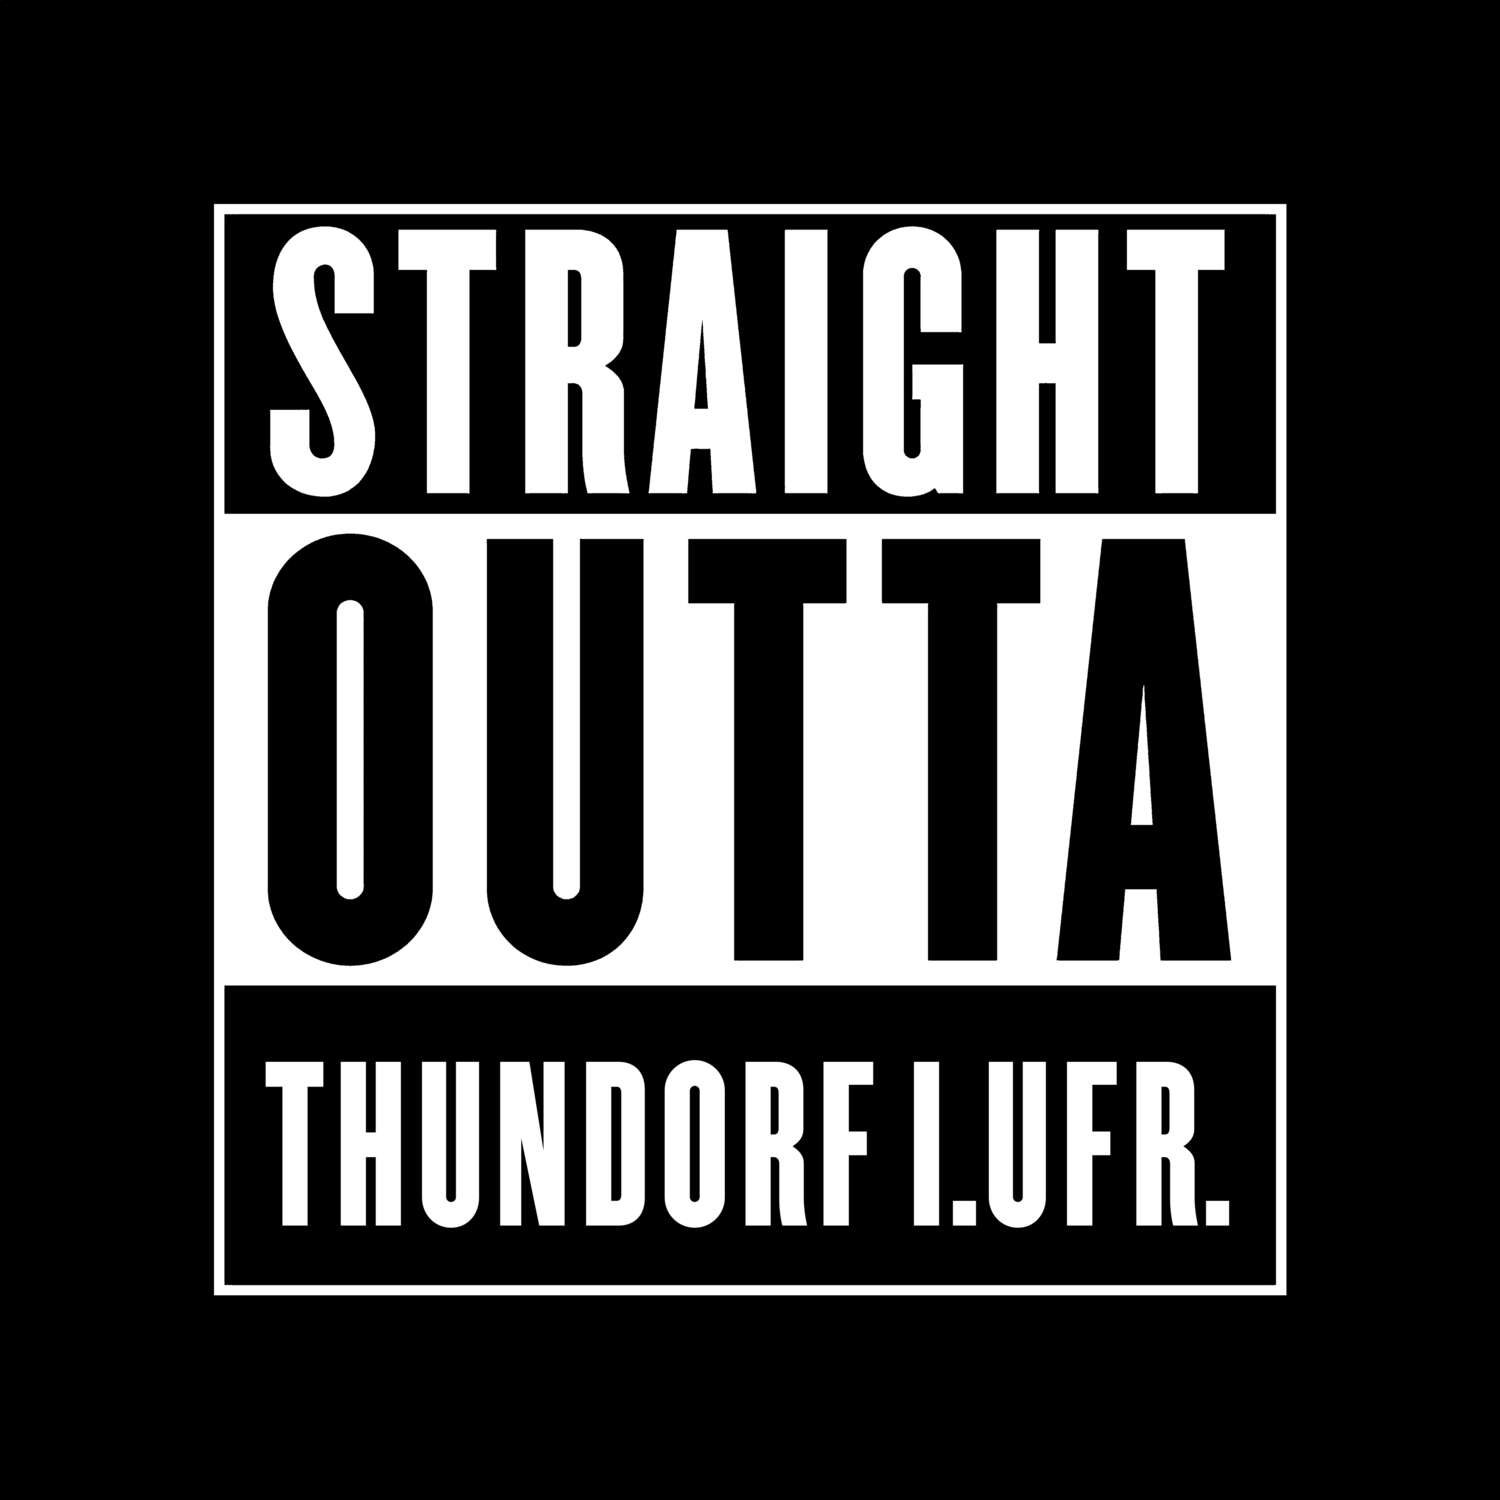 Thundorf i.UFr. T-Shirt »Straight Outta«